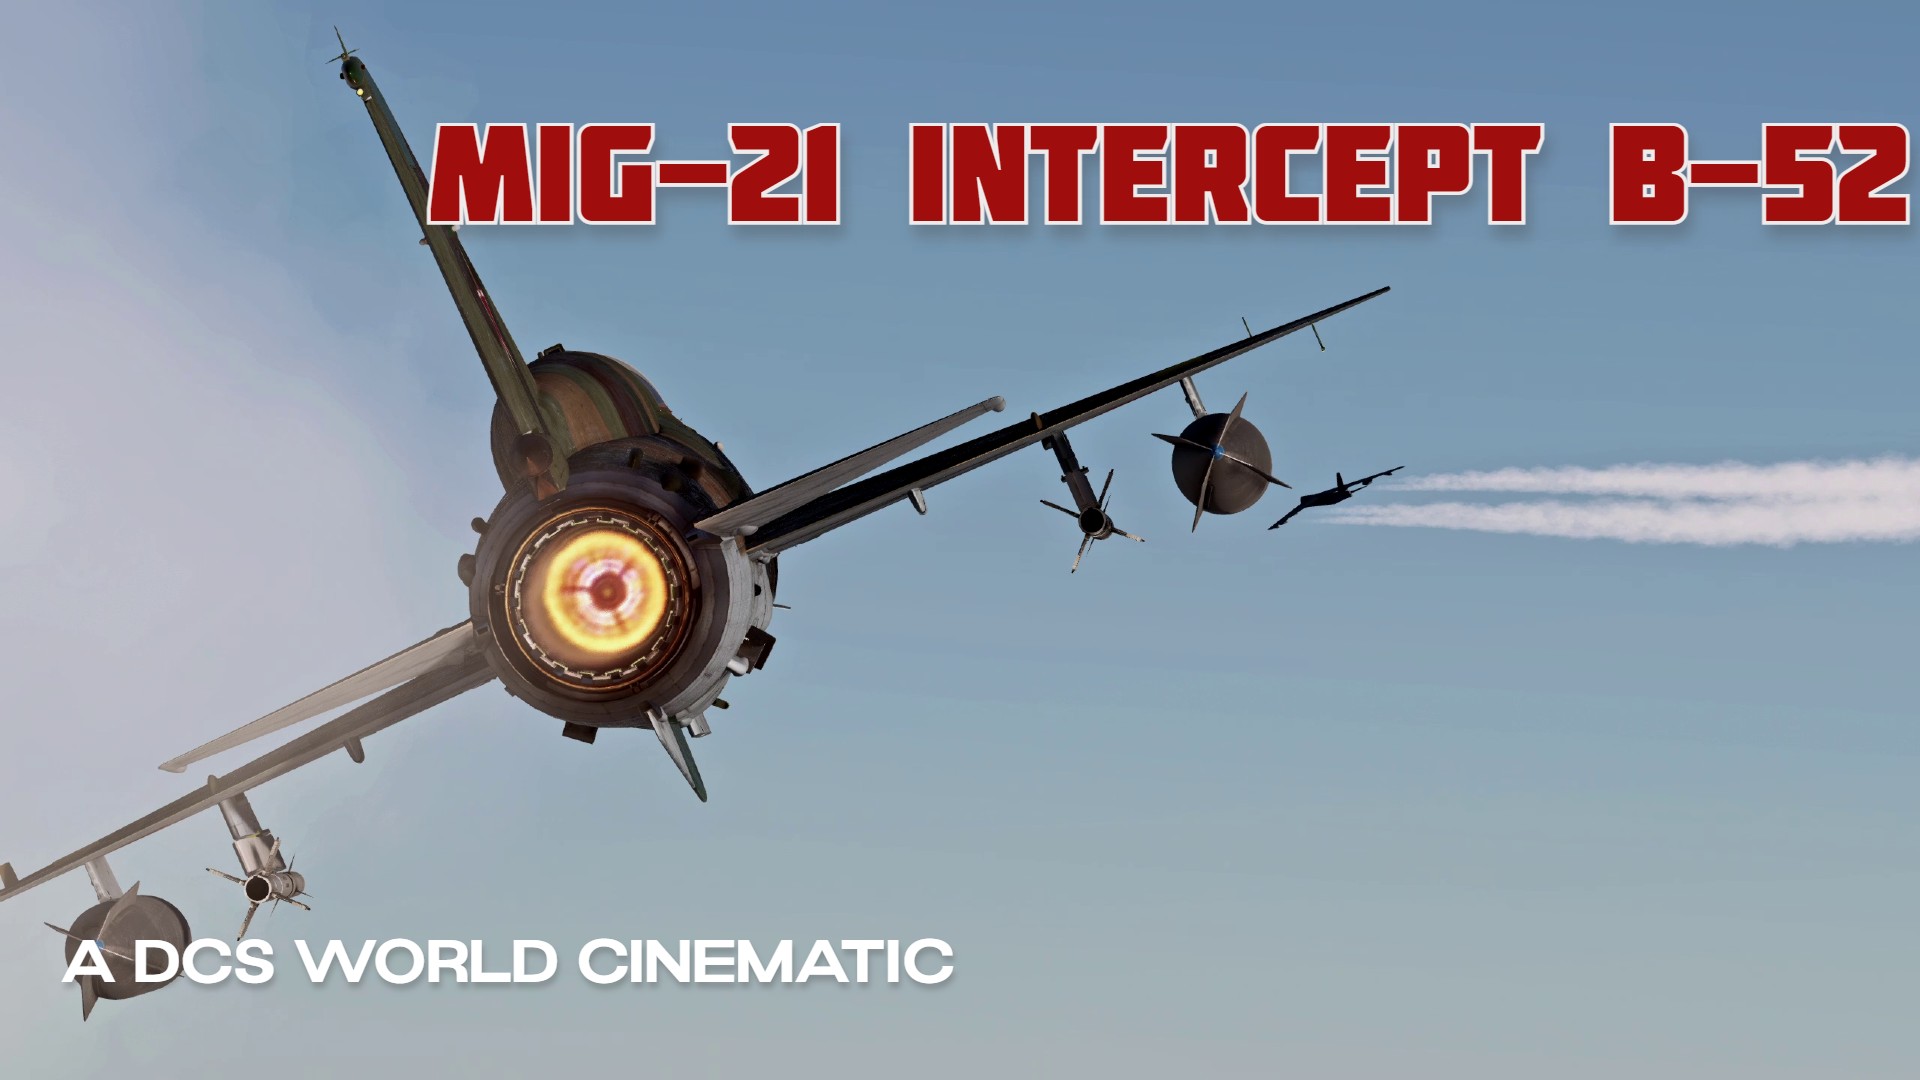 Soviet MiG-21 Intercept B-52 